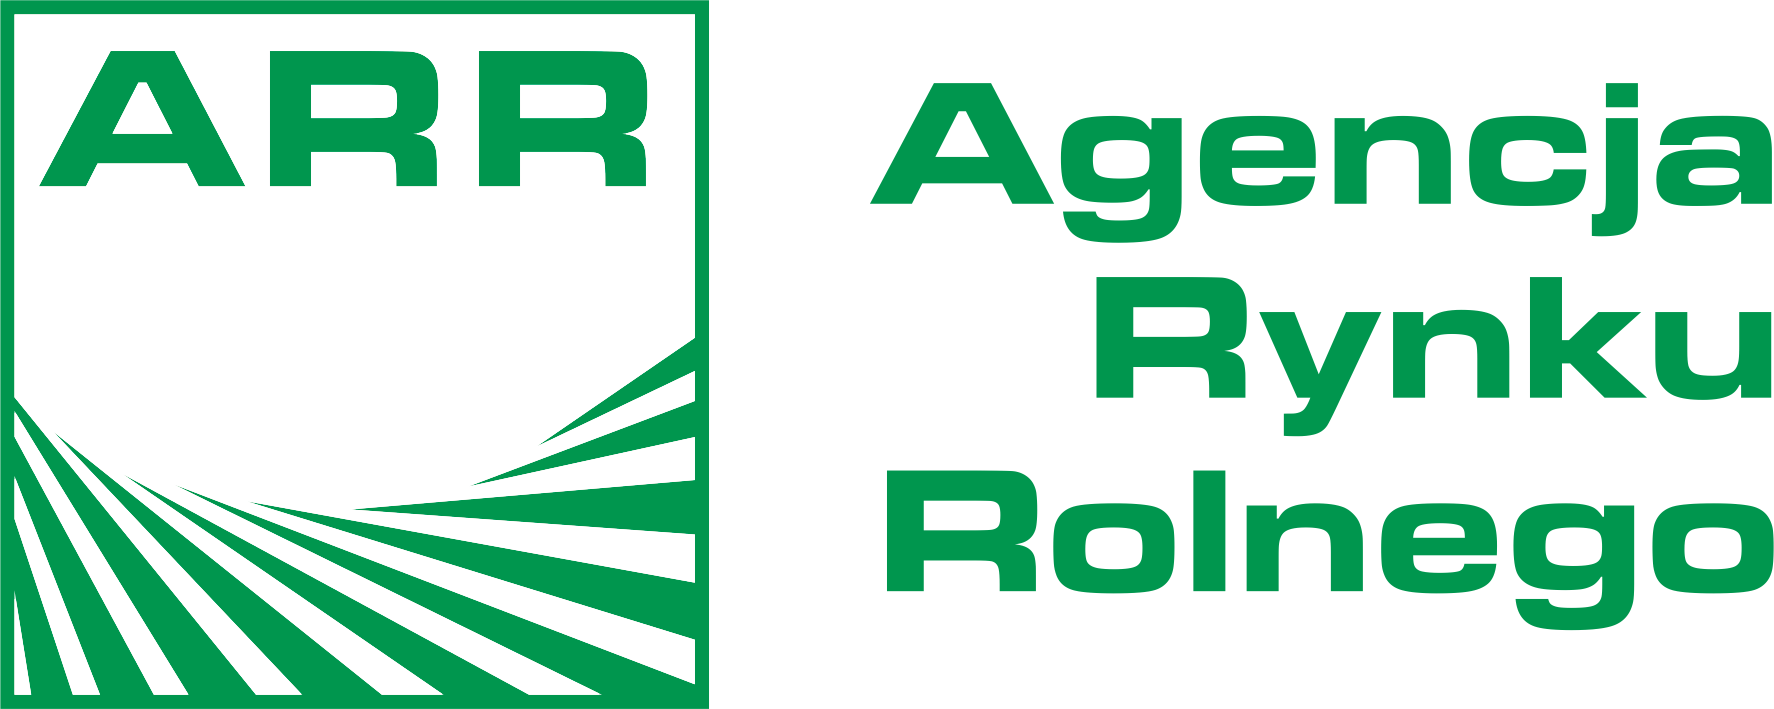 2016-02-22 arr logo-transparent